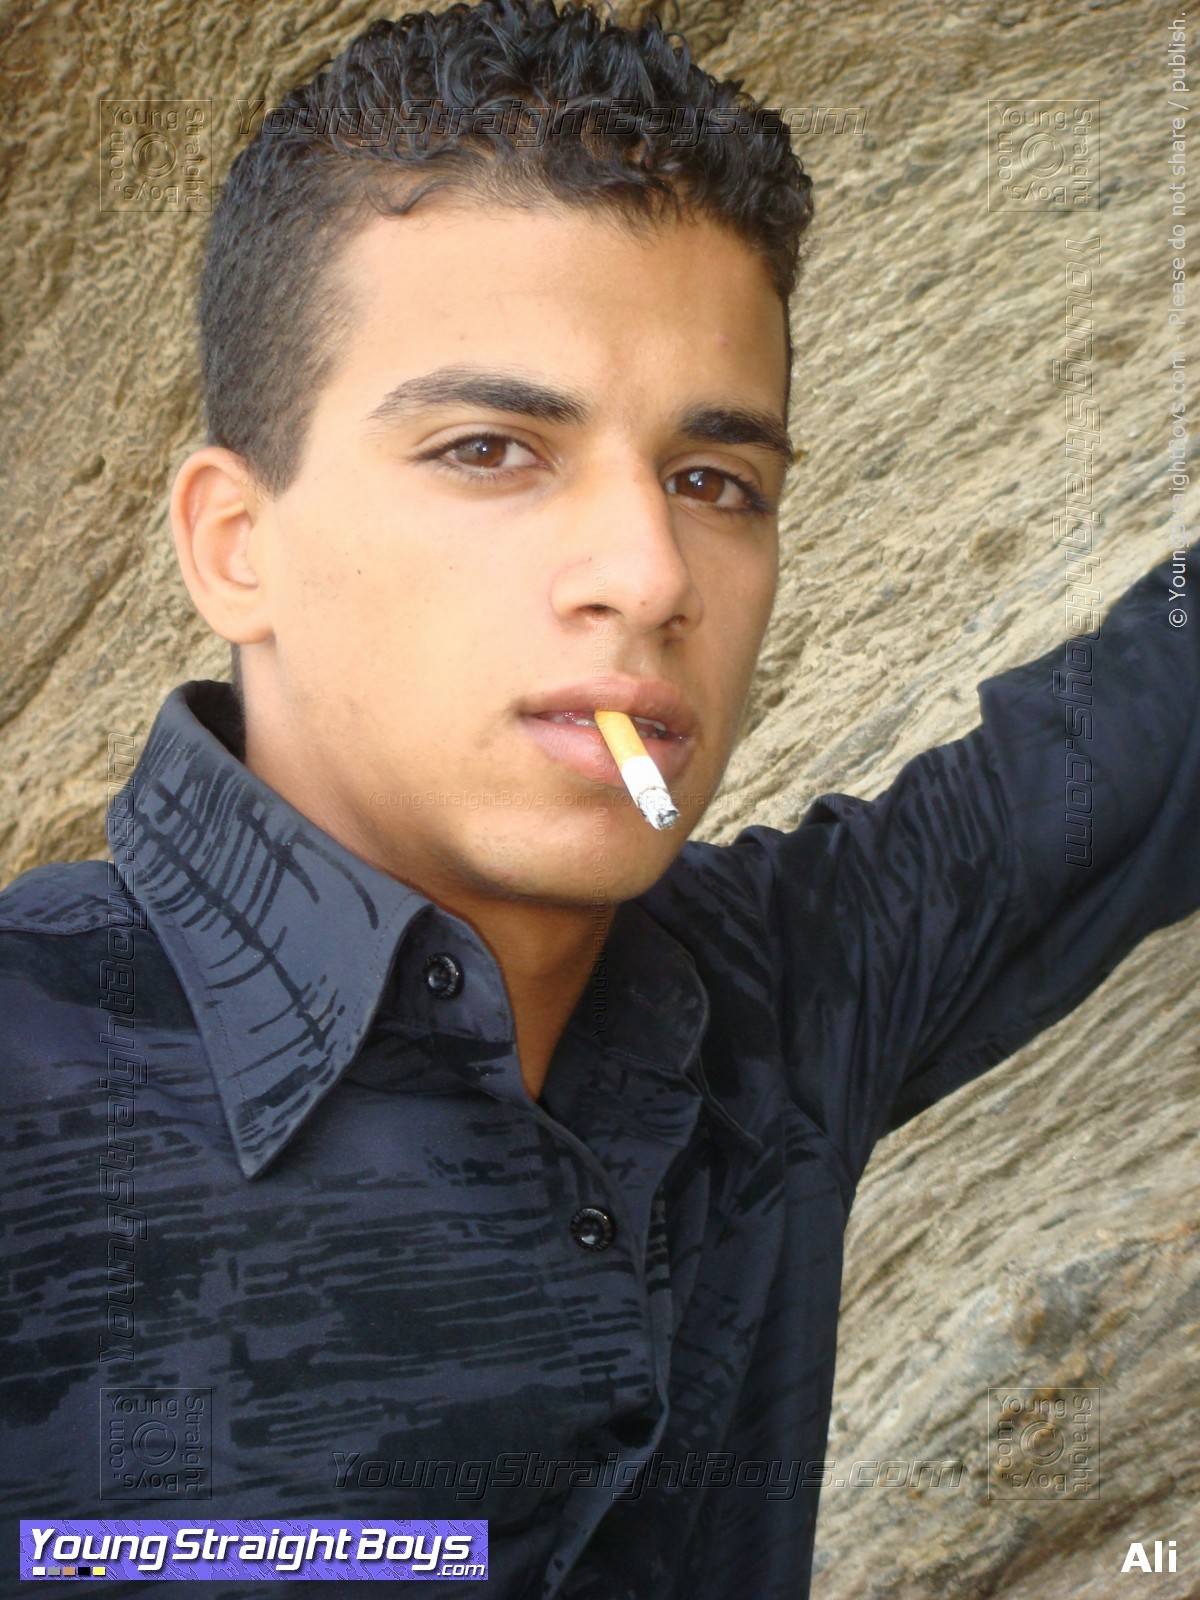 Gezichtsfoto van schurkenstaten Arabische hetero jongeman Ali die een sigaret rookt (tijdens een fotosessie op het strand, voor de sekssessie in de hotelkamer waar ik hem kon pijpen)